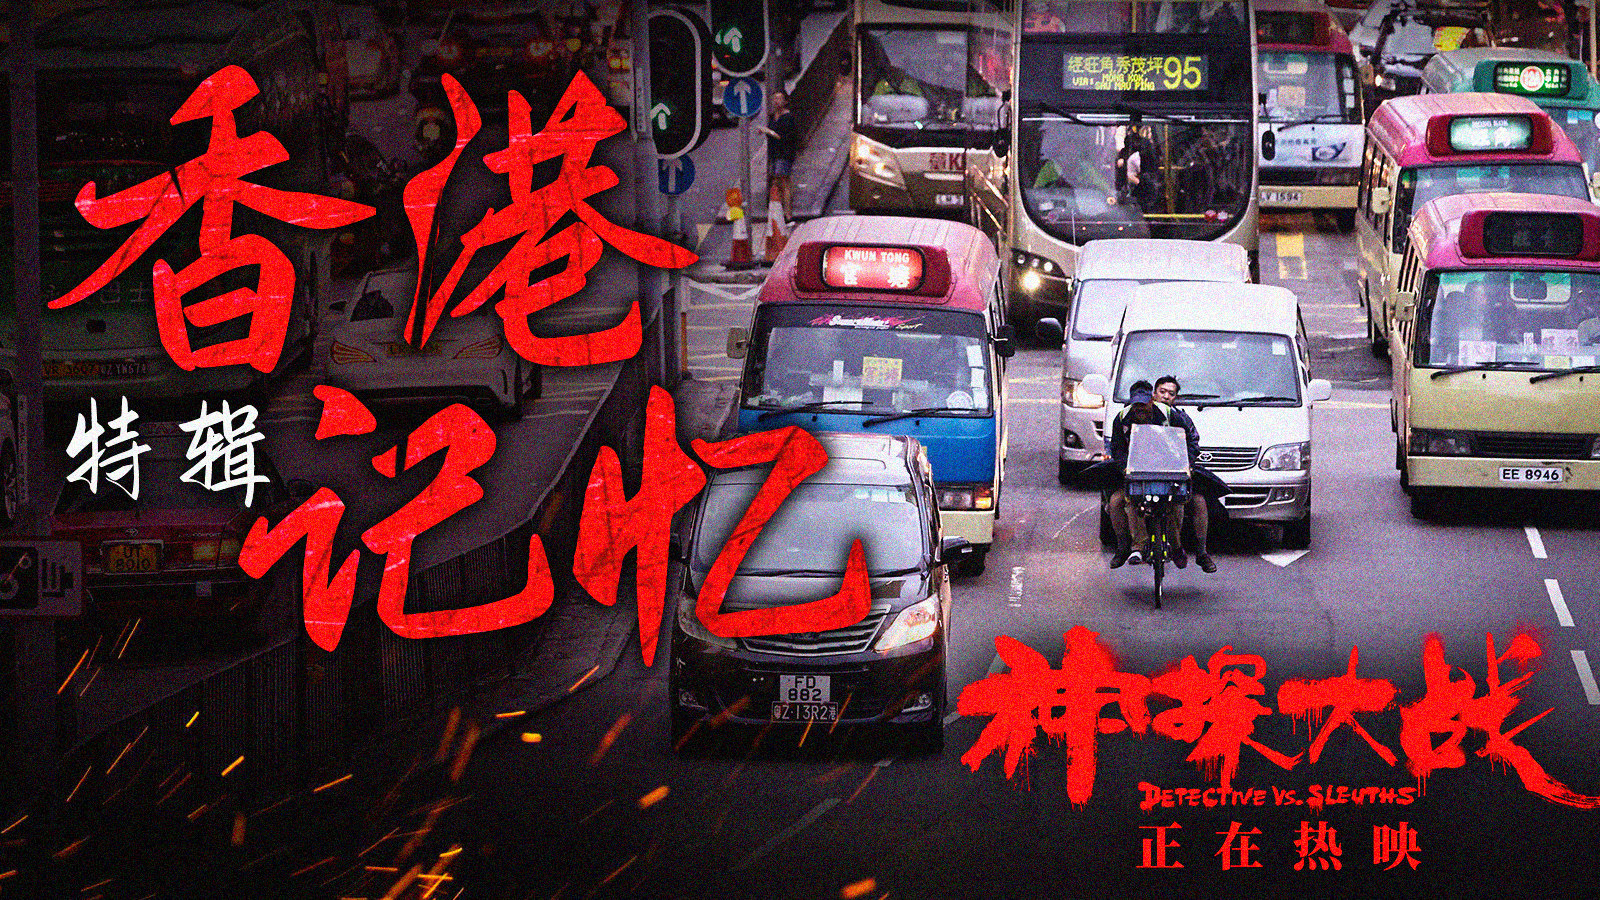 电影《神探大战》发布香港记忆特辑